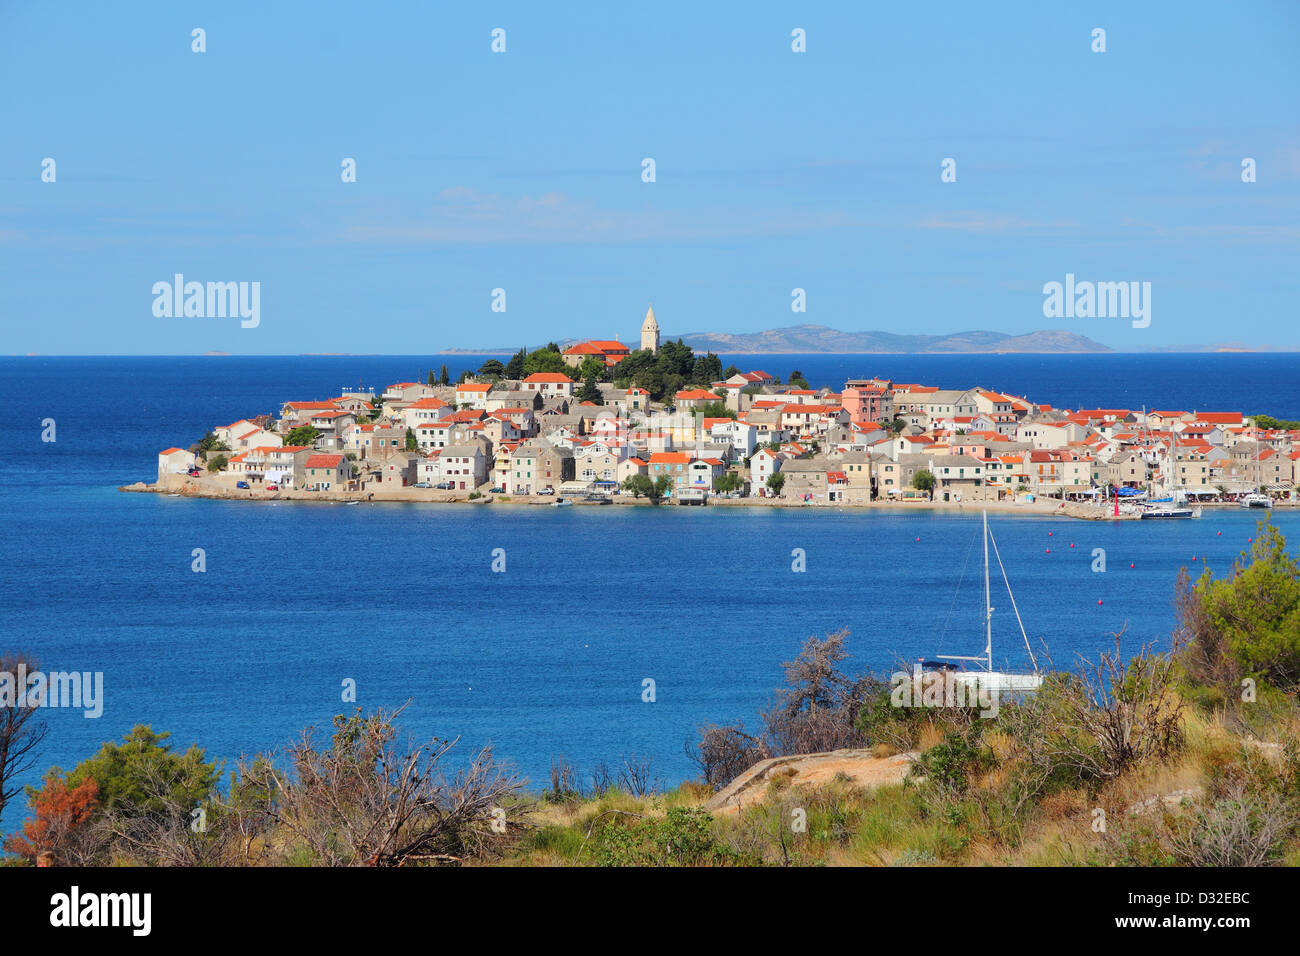 Croatia - Primosten, town in Dalmatia. Old town view. Stock Photo